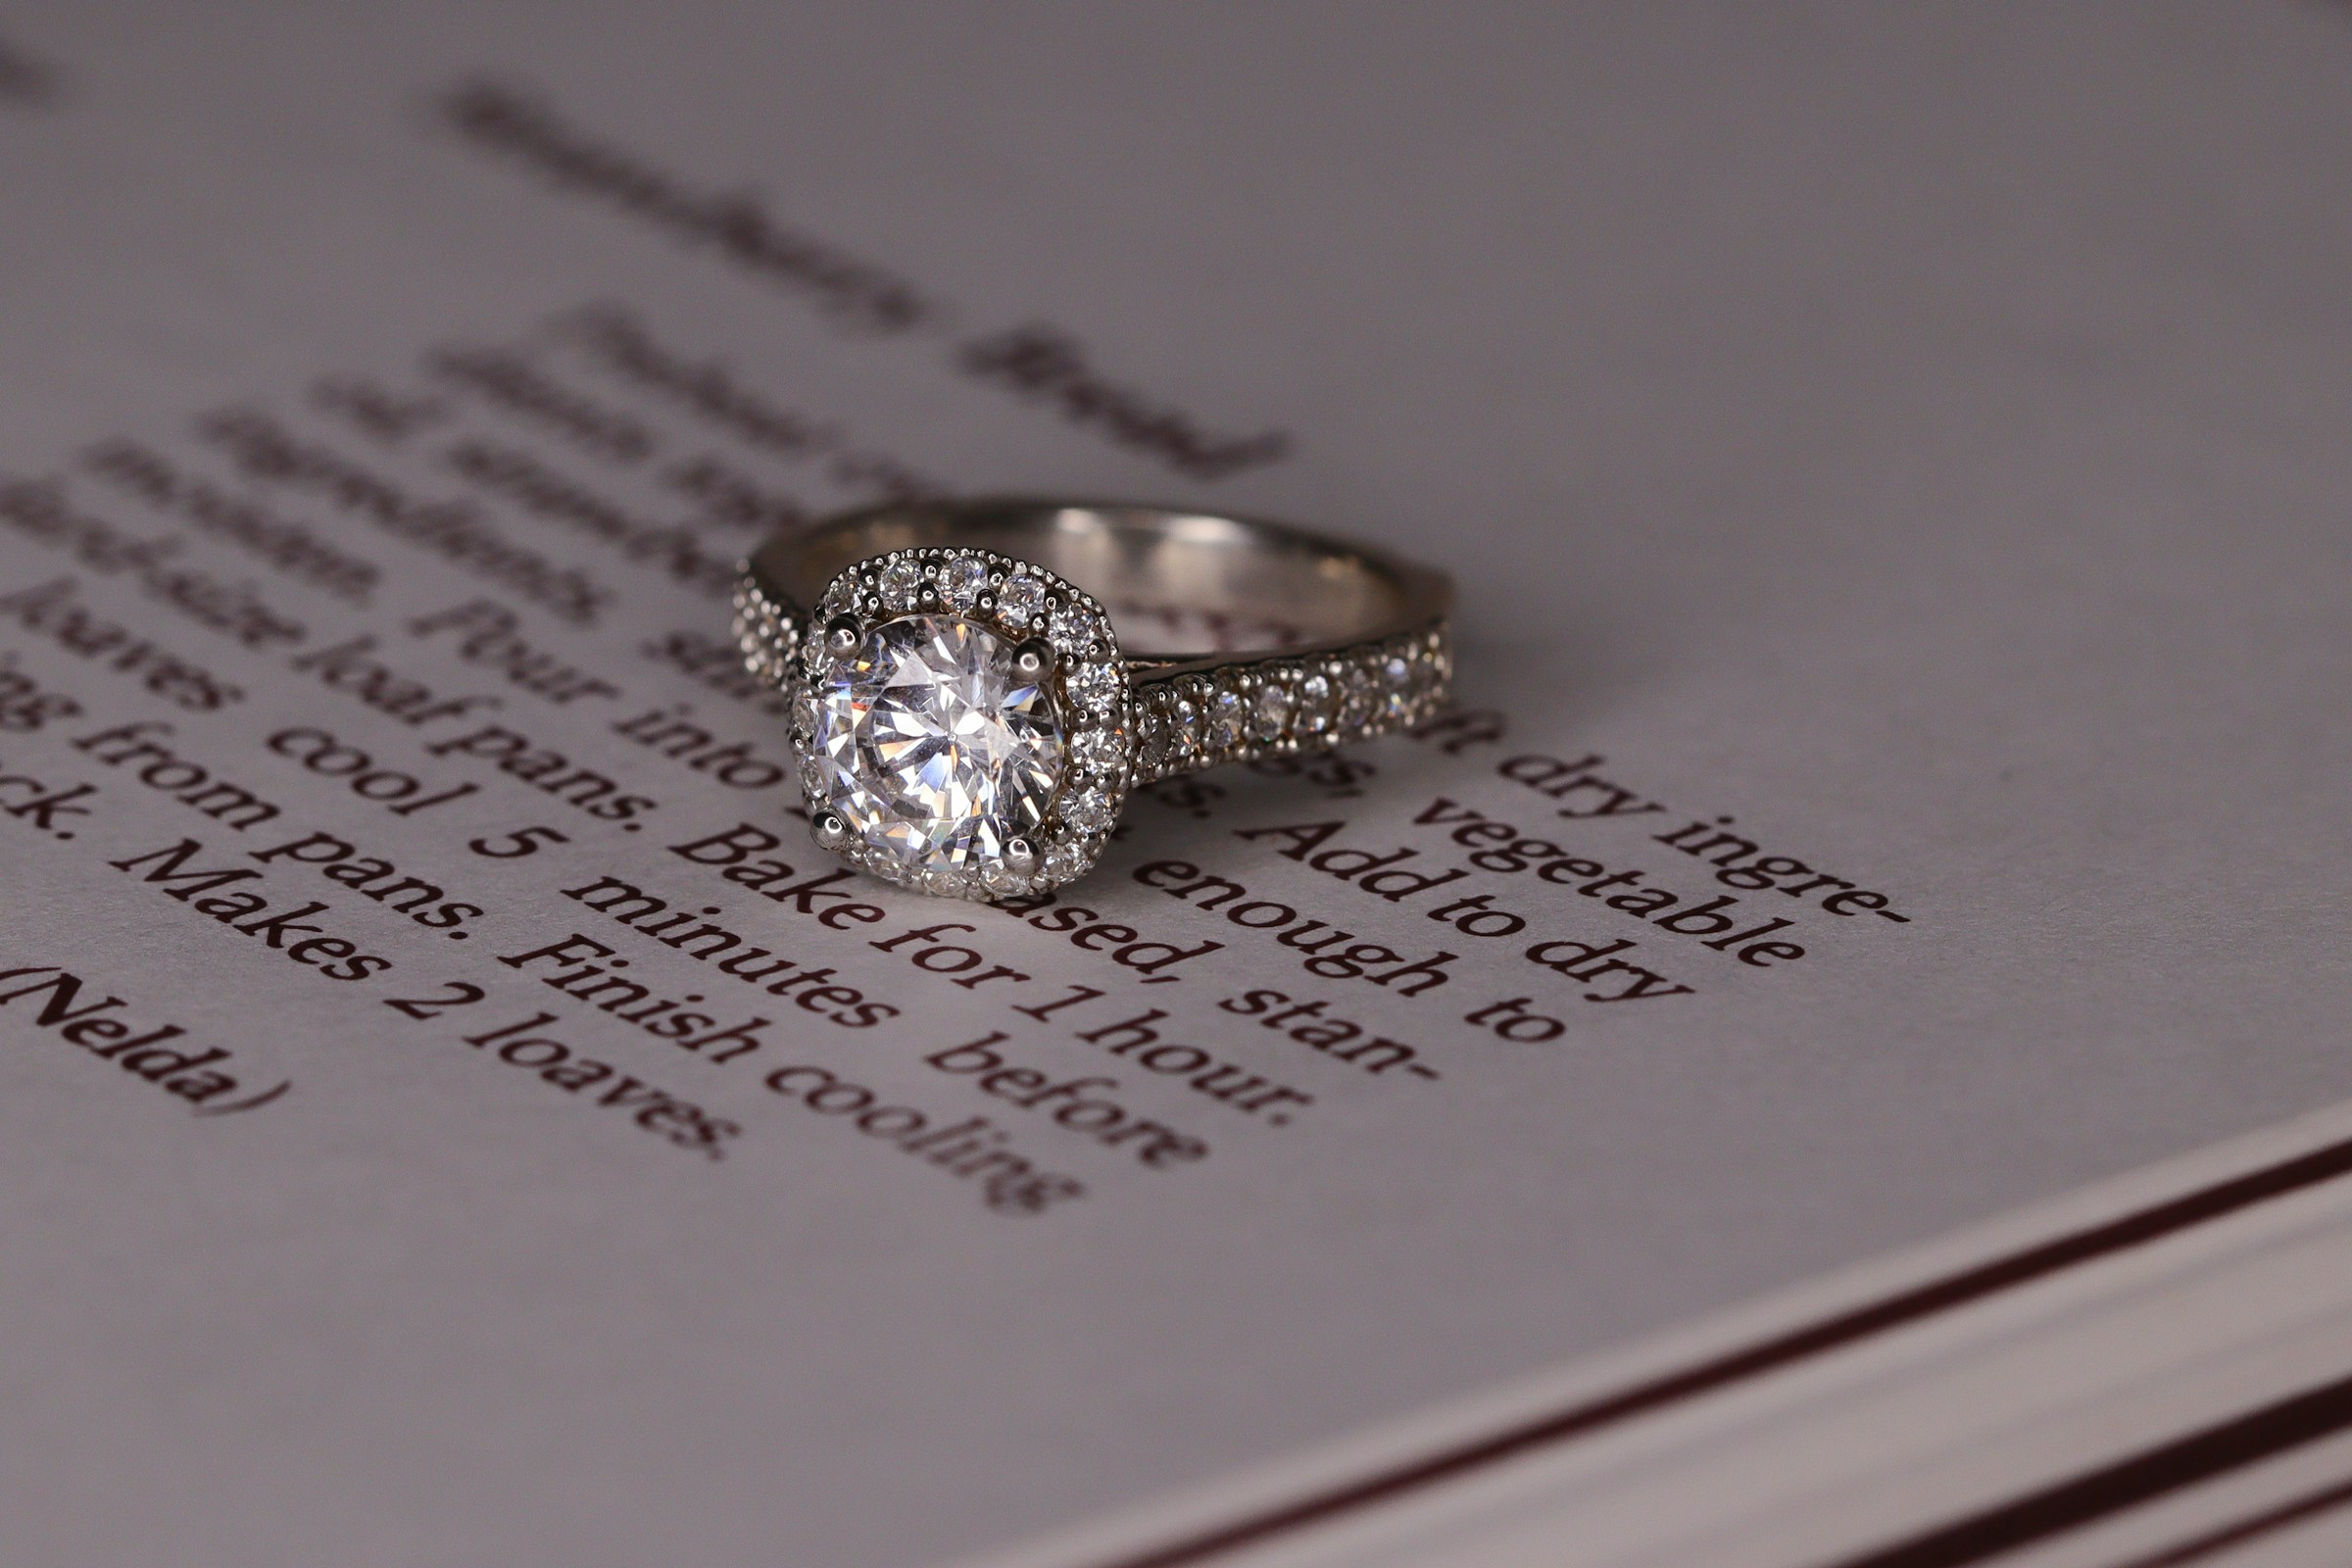 Ein Diamant-Verlobungsring aus Weißgold im Halo-Stil auf einem Buch | Quelle: Unsplash